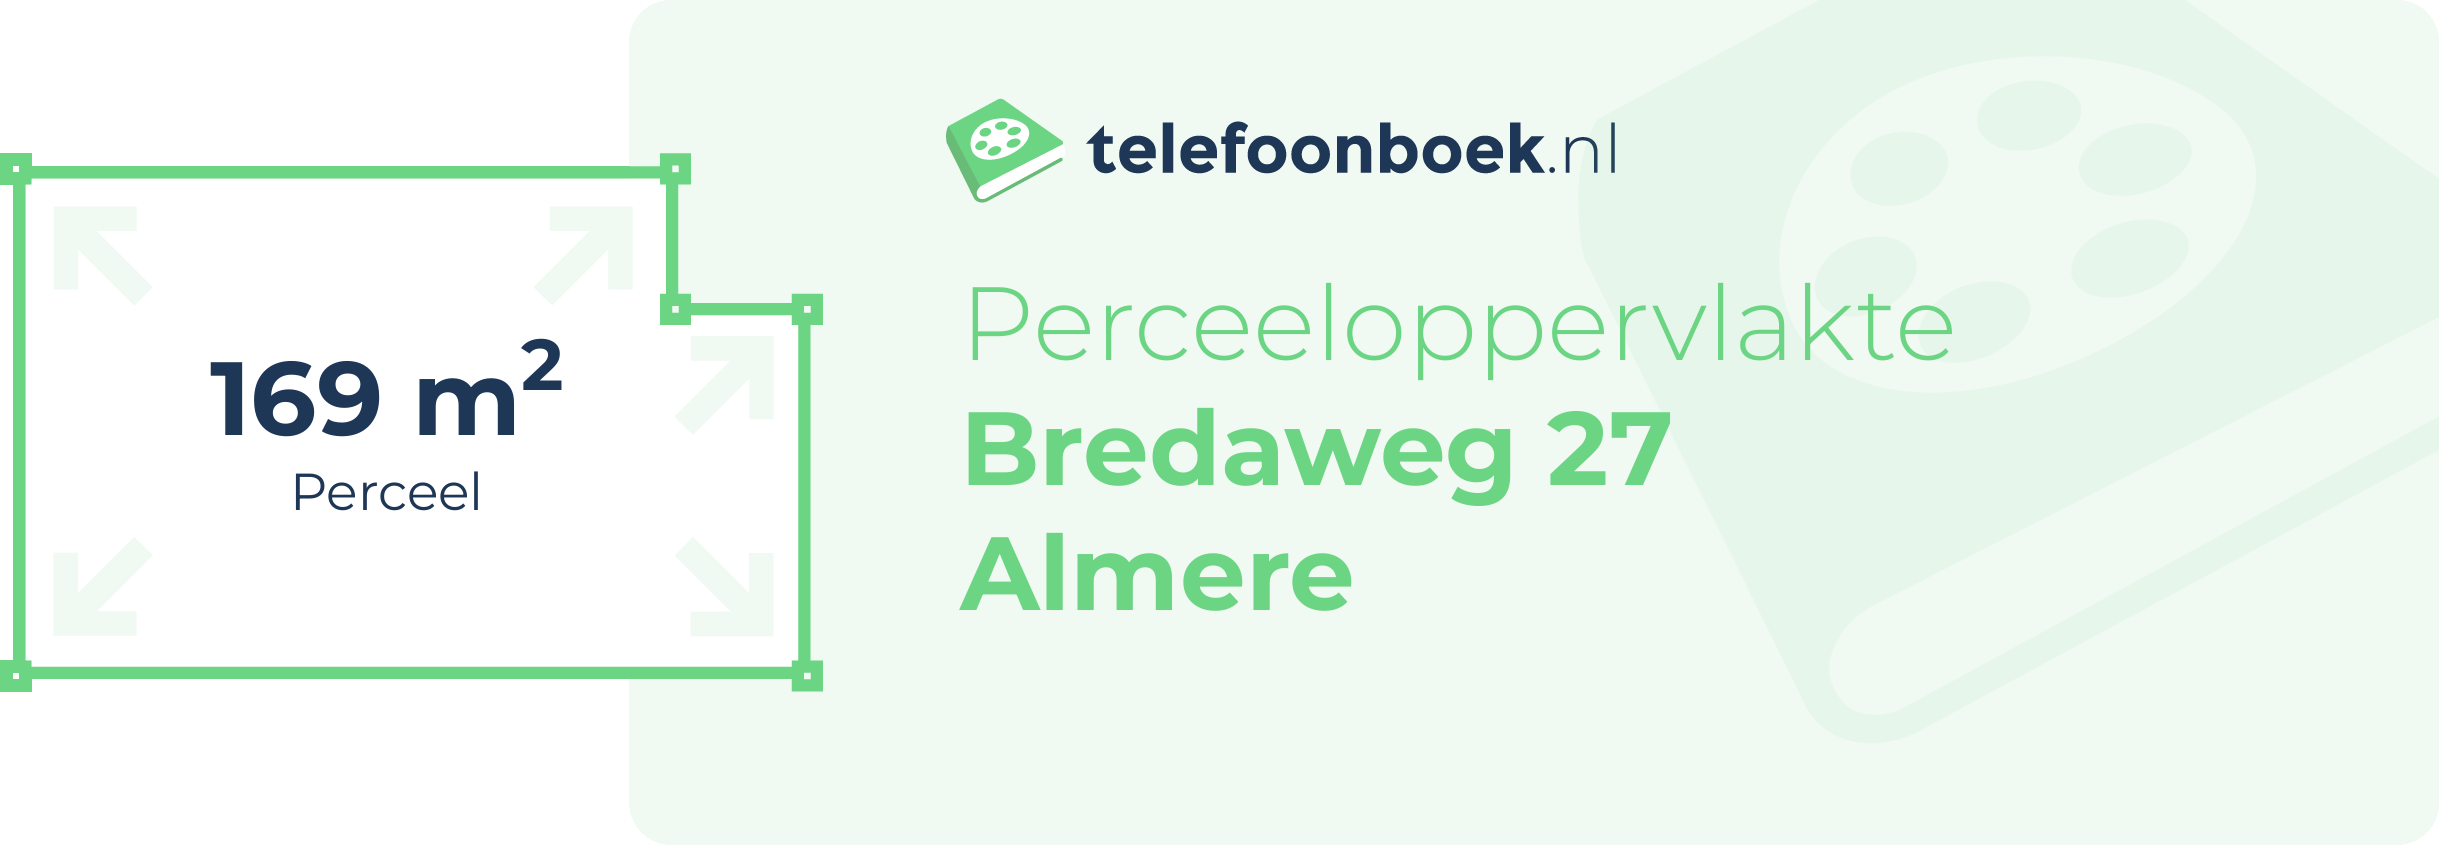 Perceeloppervlakte Bredaweg 27 Almere